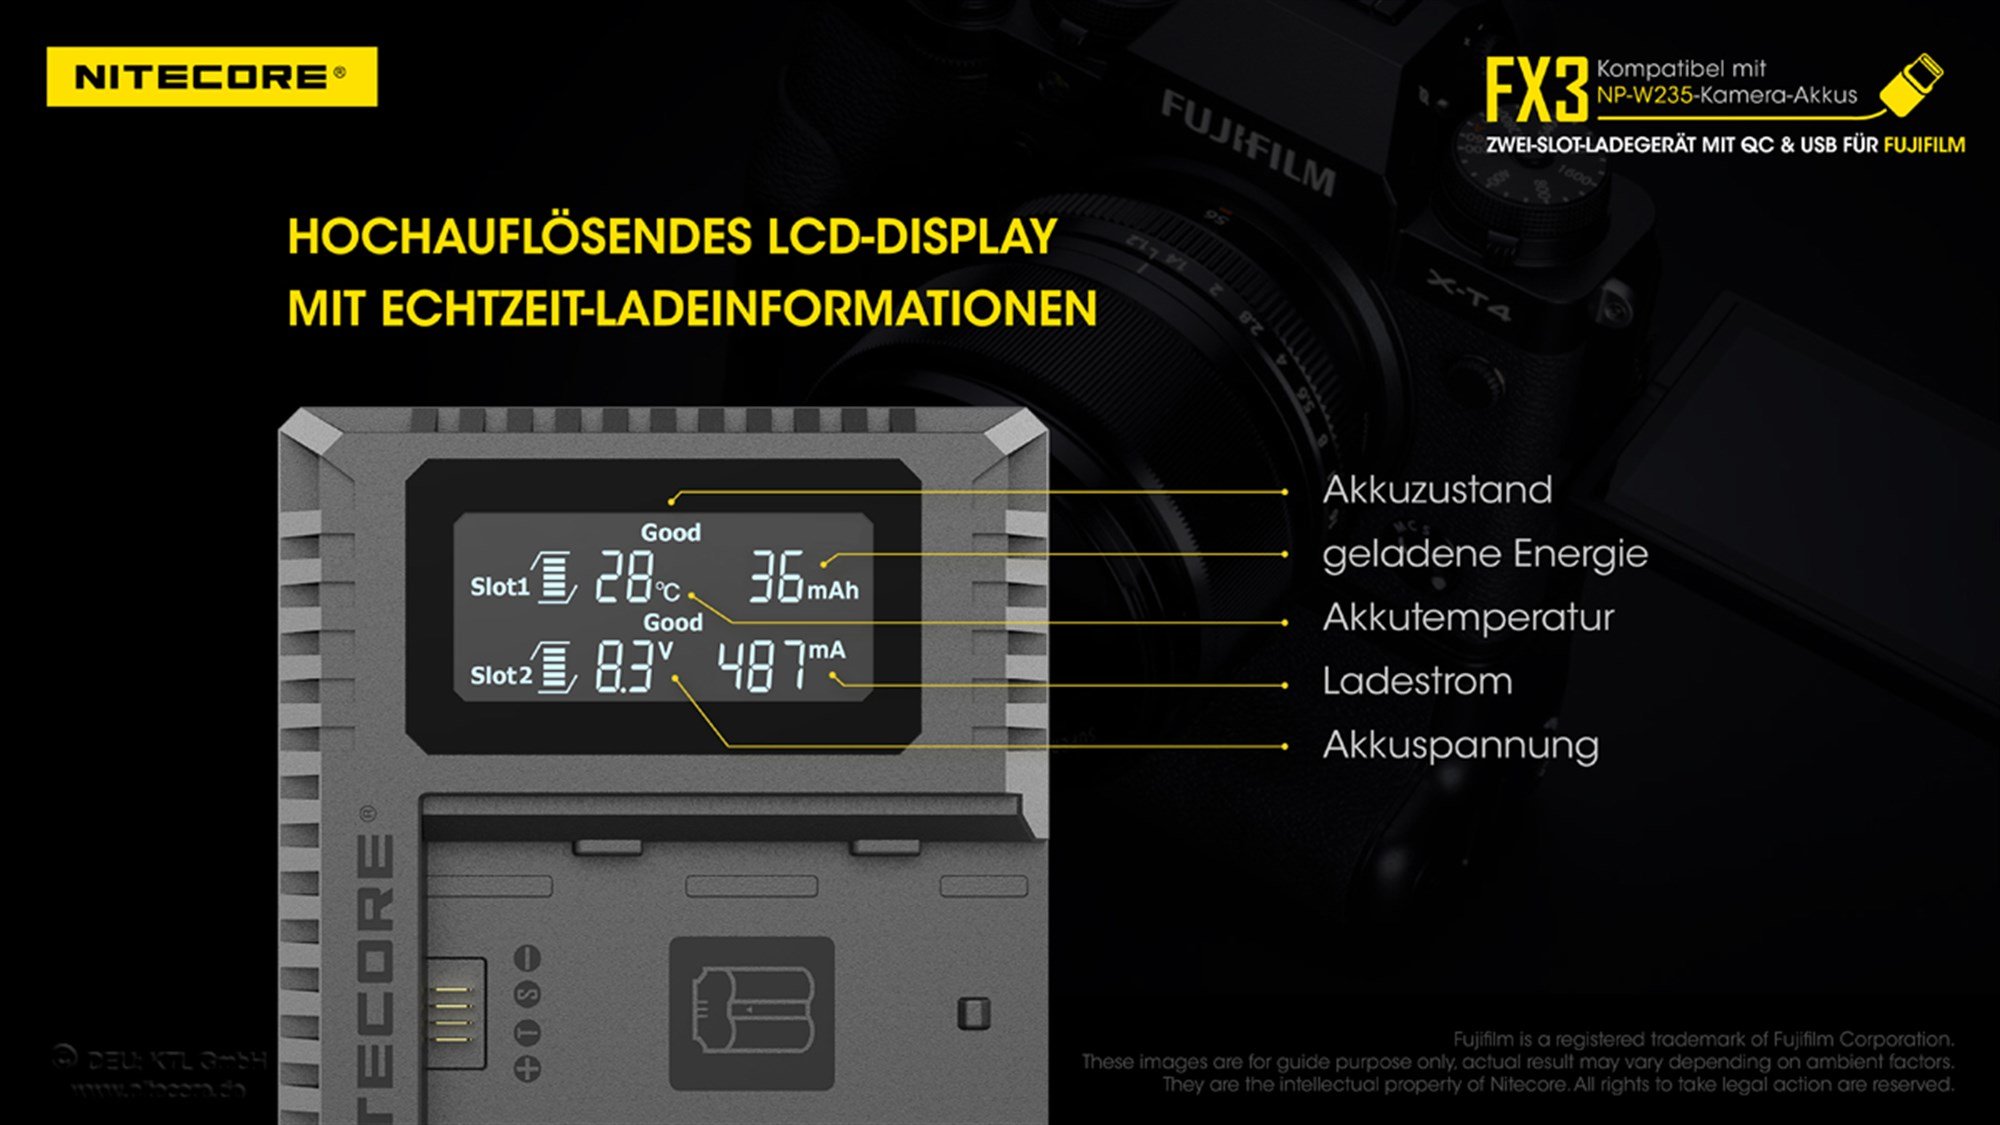 Nitecore FX3 - Fuji kameralar için